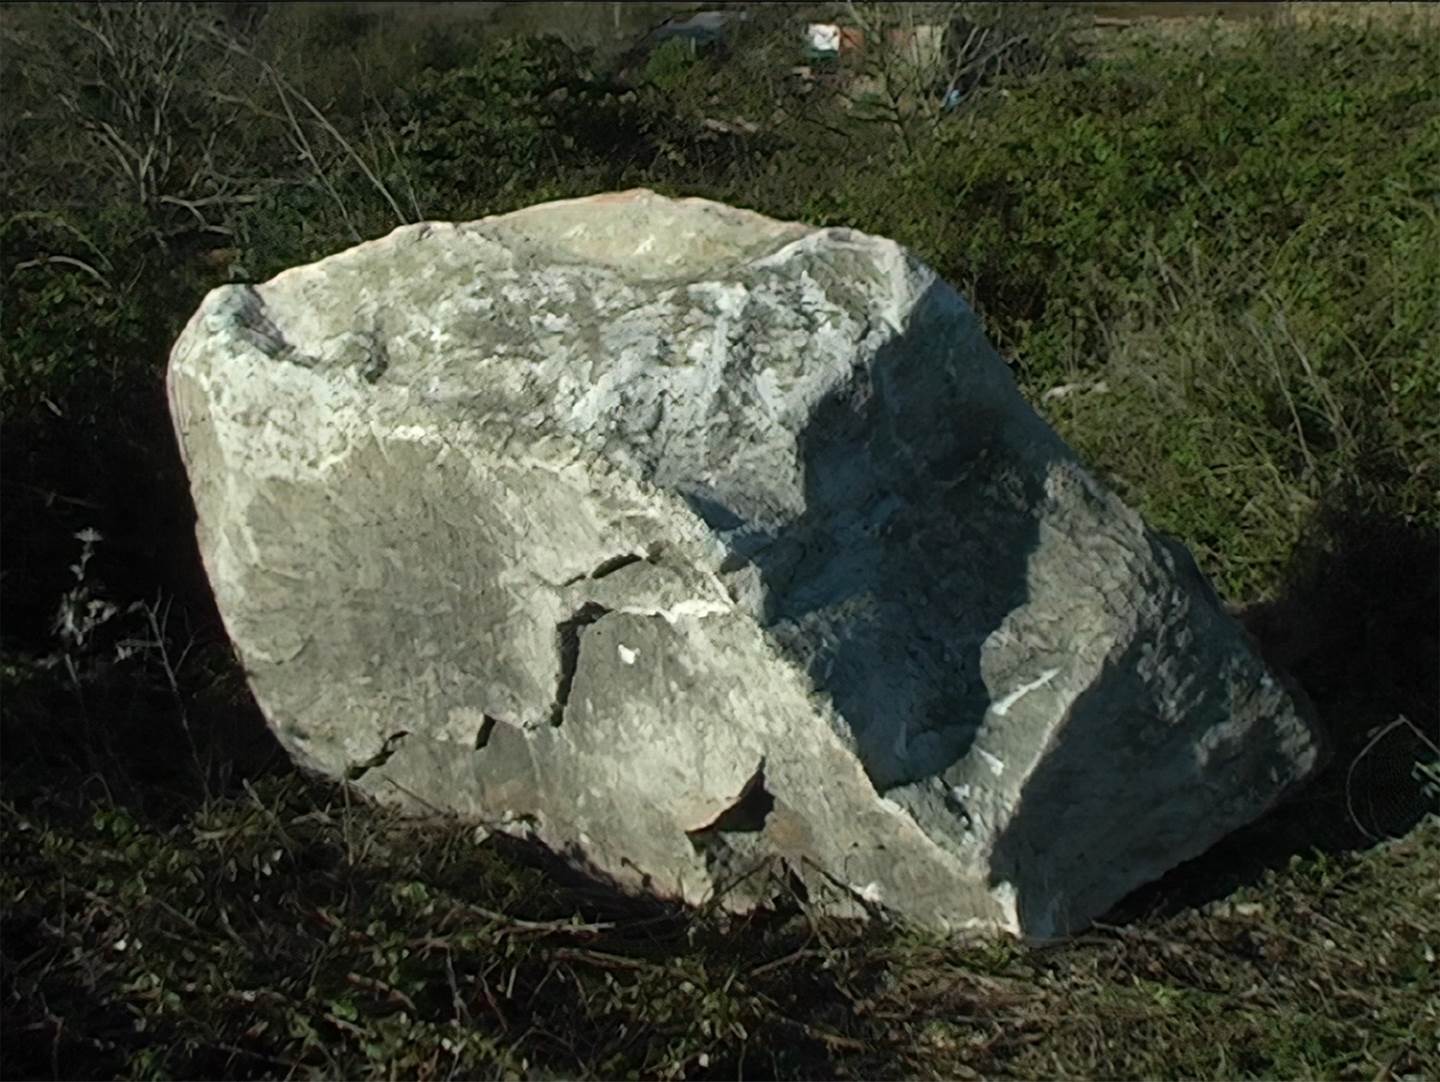 Pedra, original   Video by João Tabarra